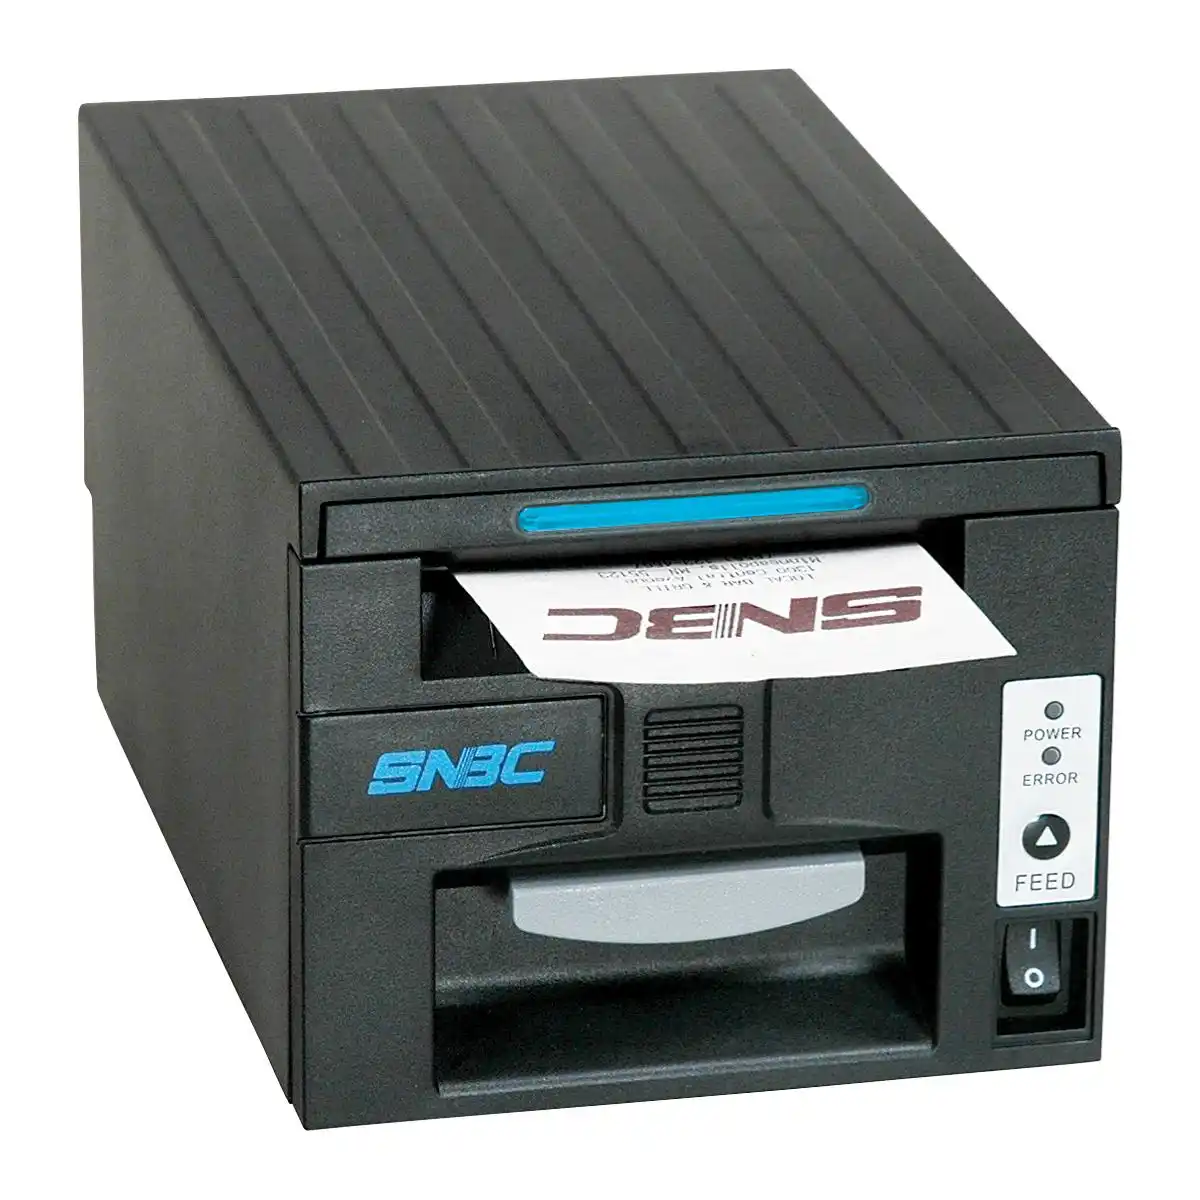 SNBC Bondrucker BTP-R681 mit seriellem, USB & Ethernet Anschlüssen in schwarz von vorne links